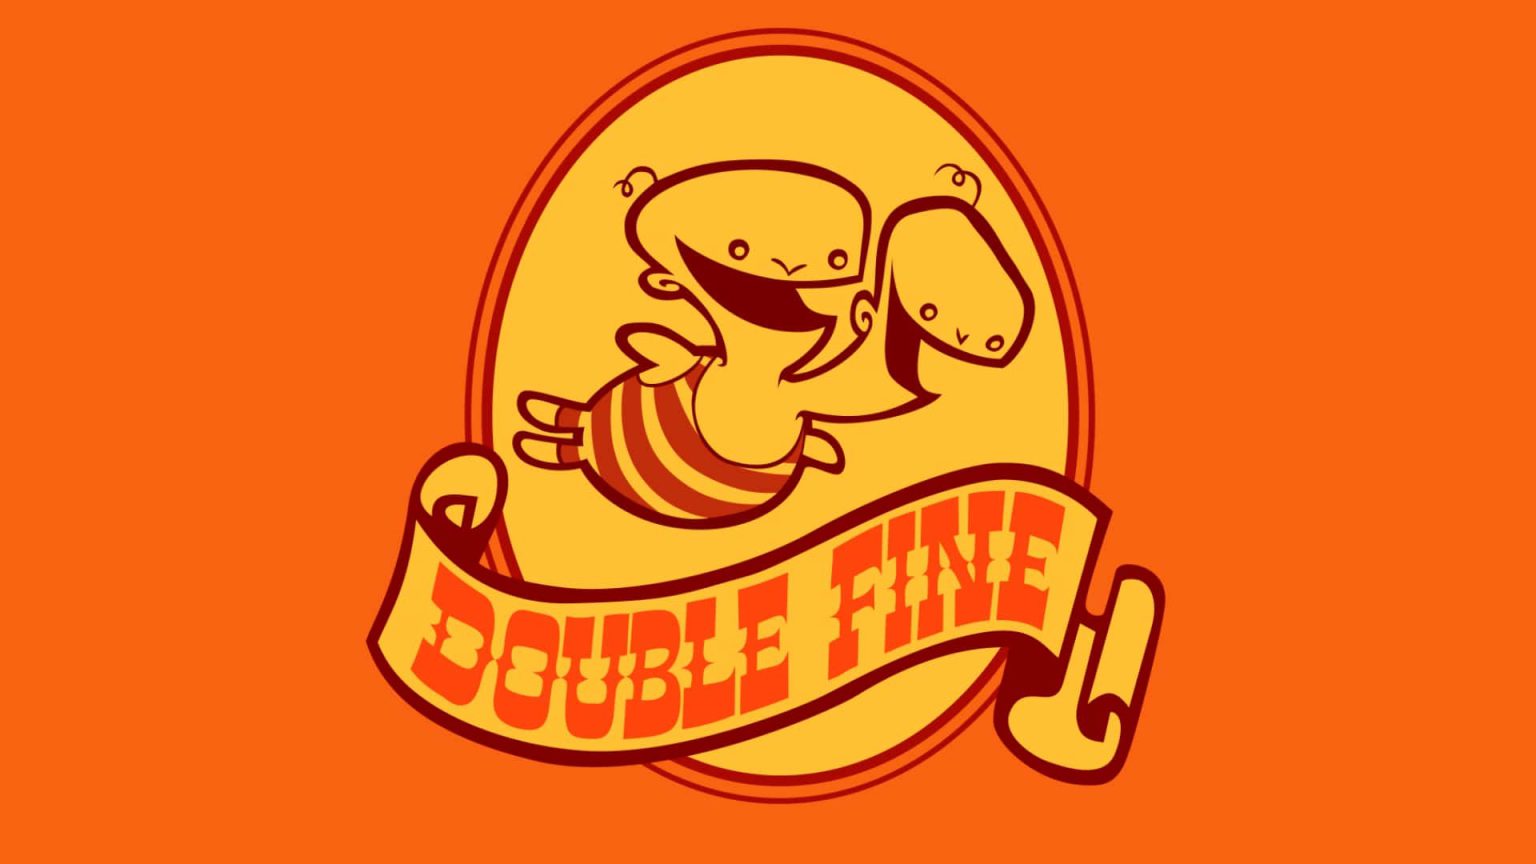 Desde la cuenta oficial de Double Fine han dejado pistas sobre su nuevo proyecto, aunque está en fase temprana, avanza de manera satisfactoria.